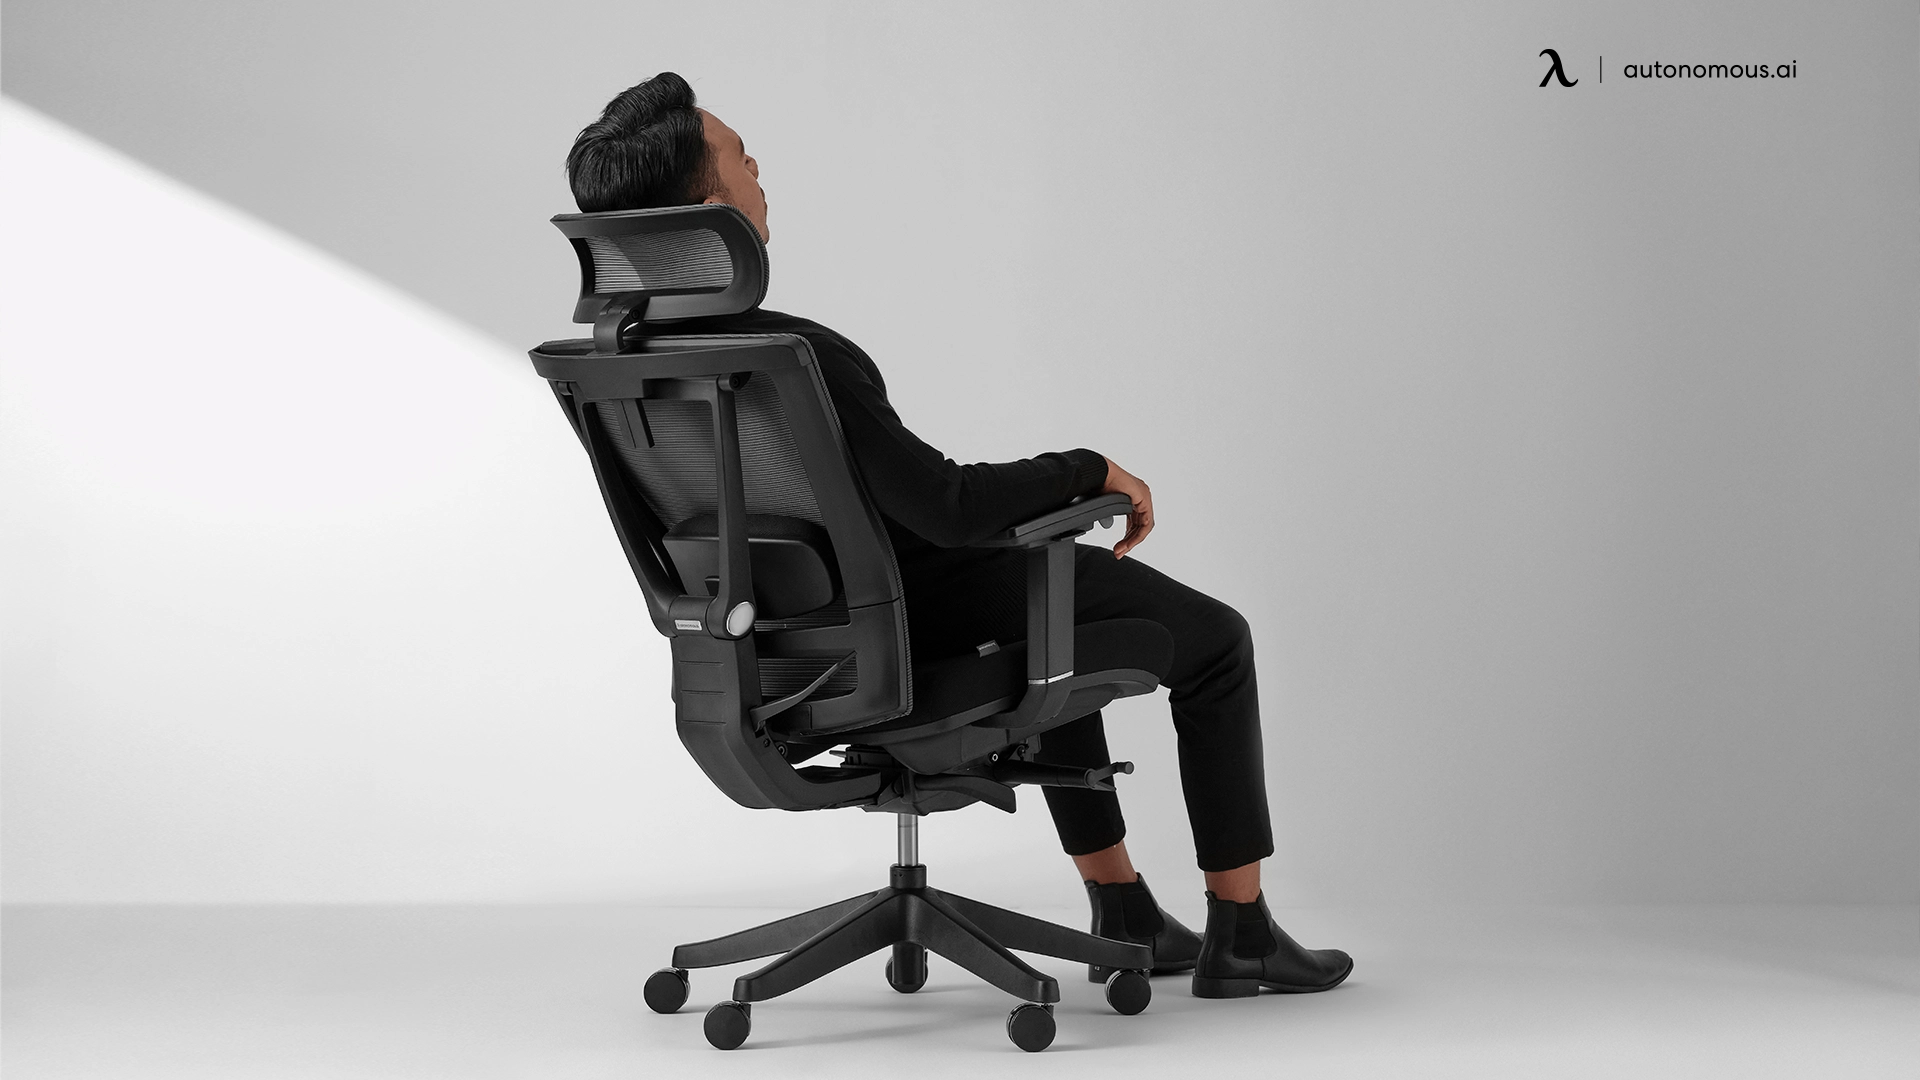 https://cdn.autonomous.ai/production/ecm/240111/most-comfortable-office-chairs-for-long-hour-sitting.webp